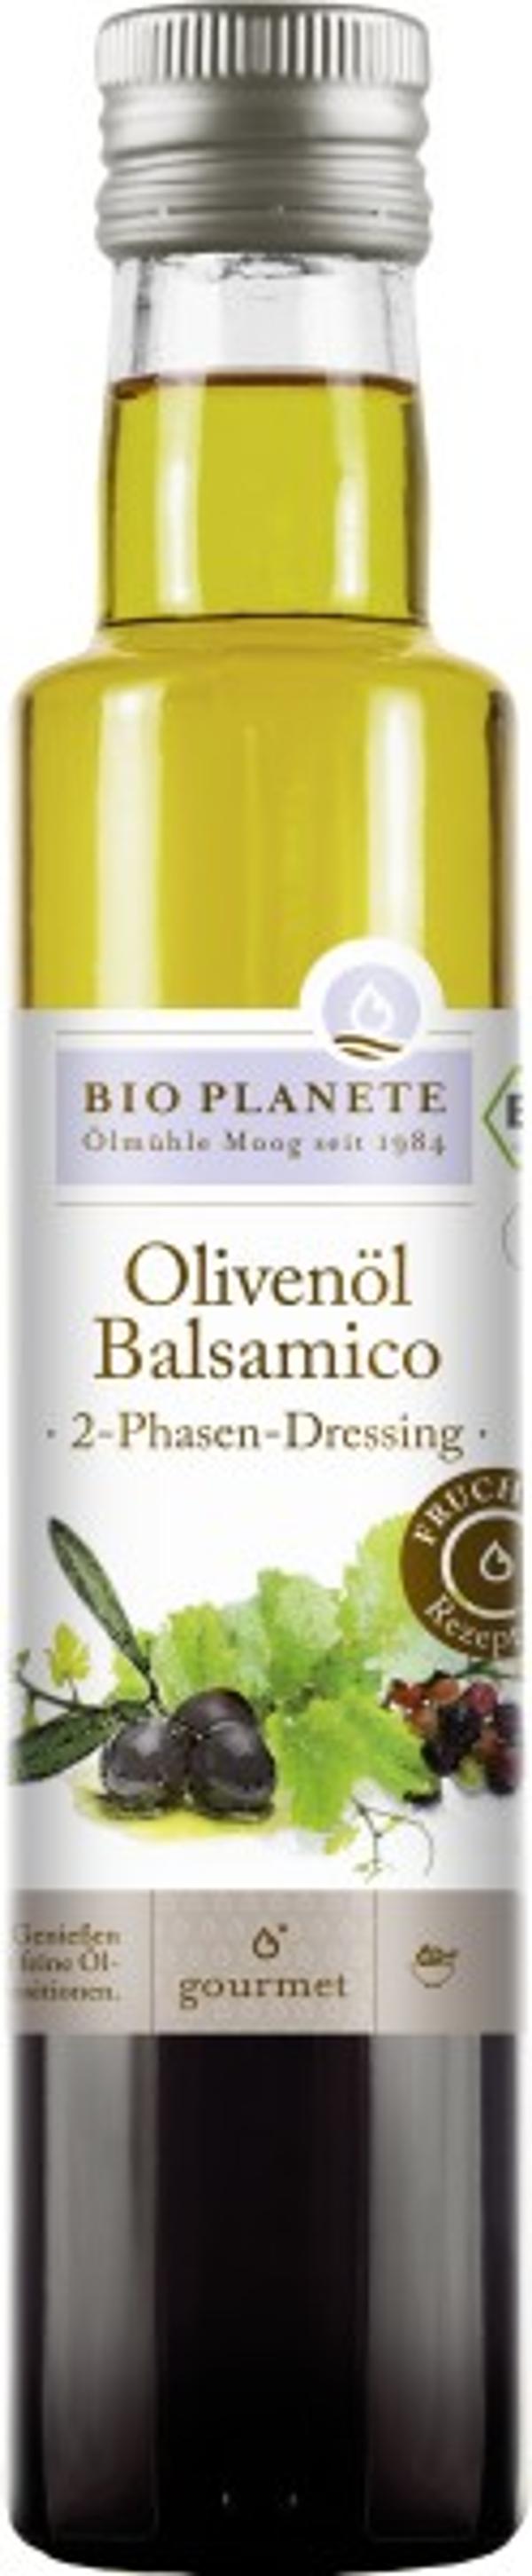 Produktfoto zu Bio Planete Olivenöl und Balsamico Essig - 250ml